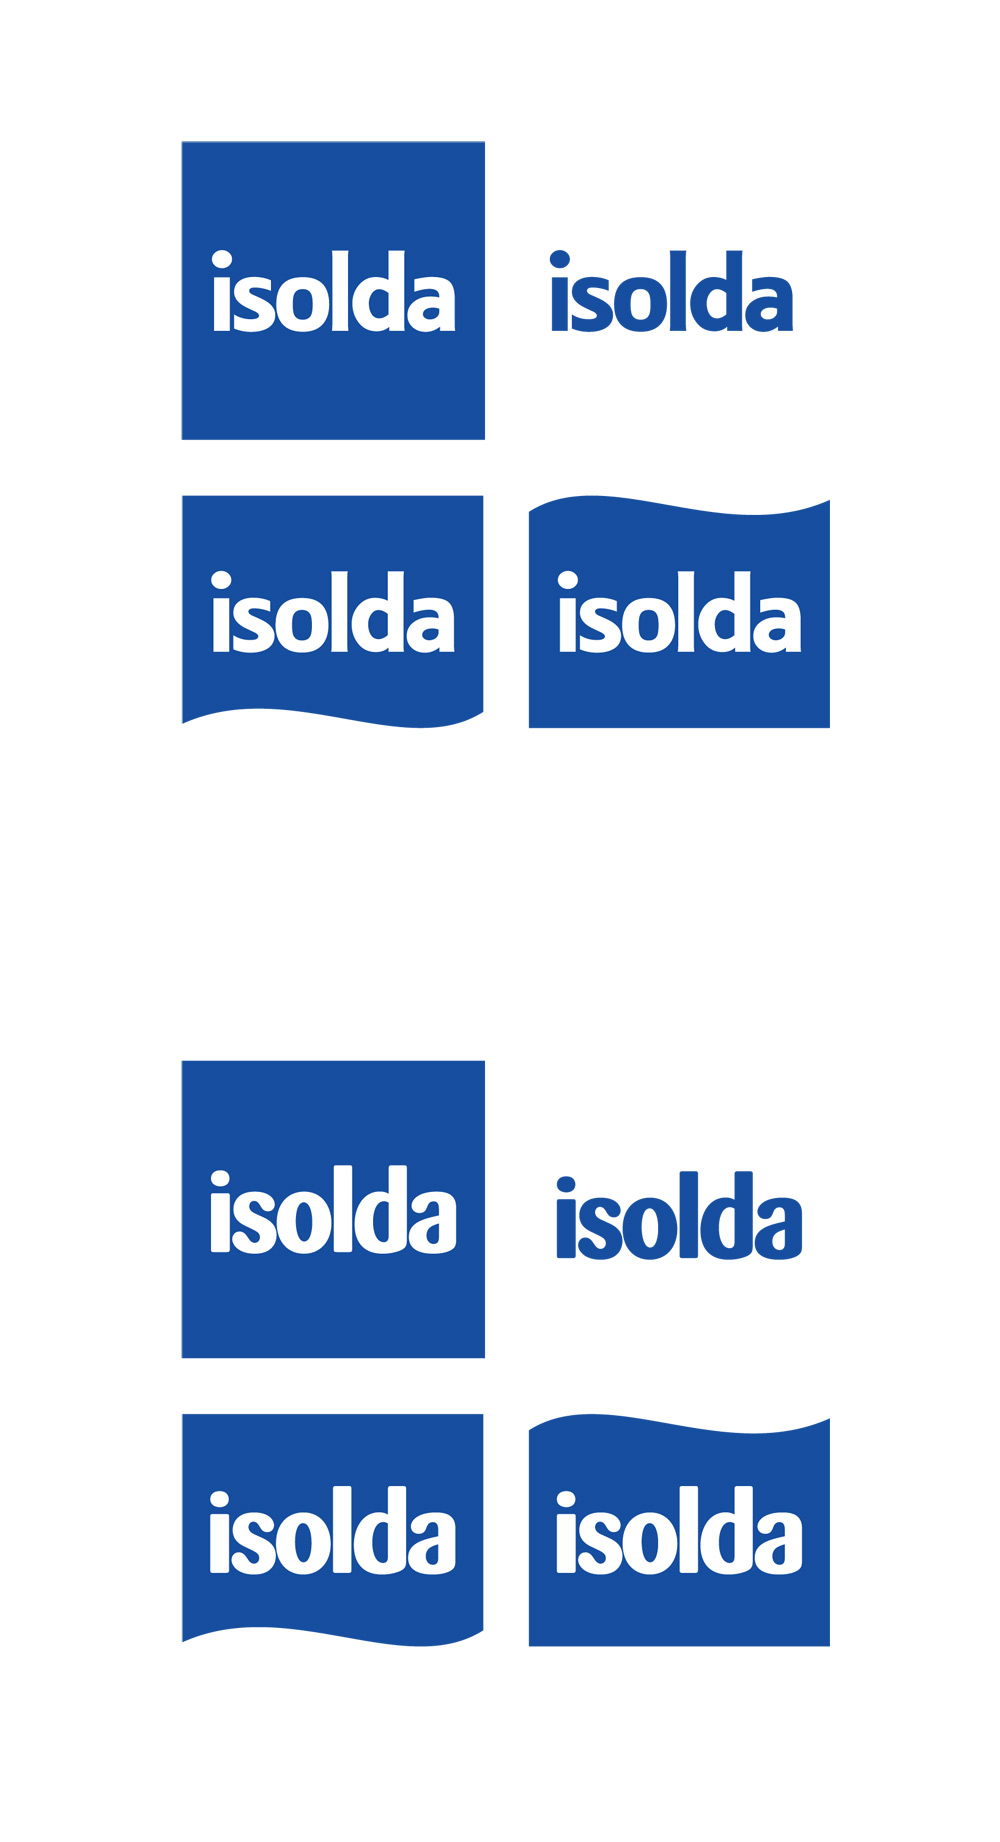 isolda_11